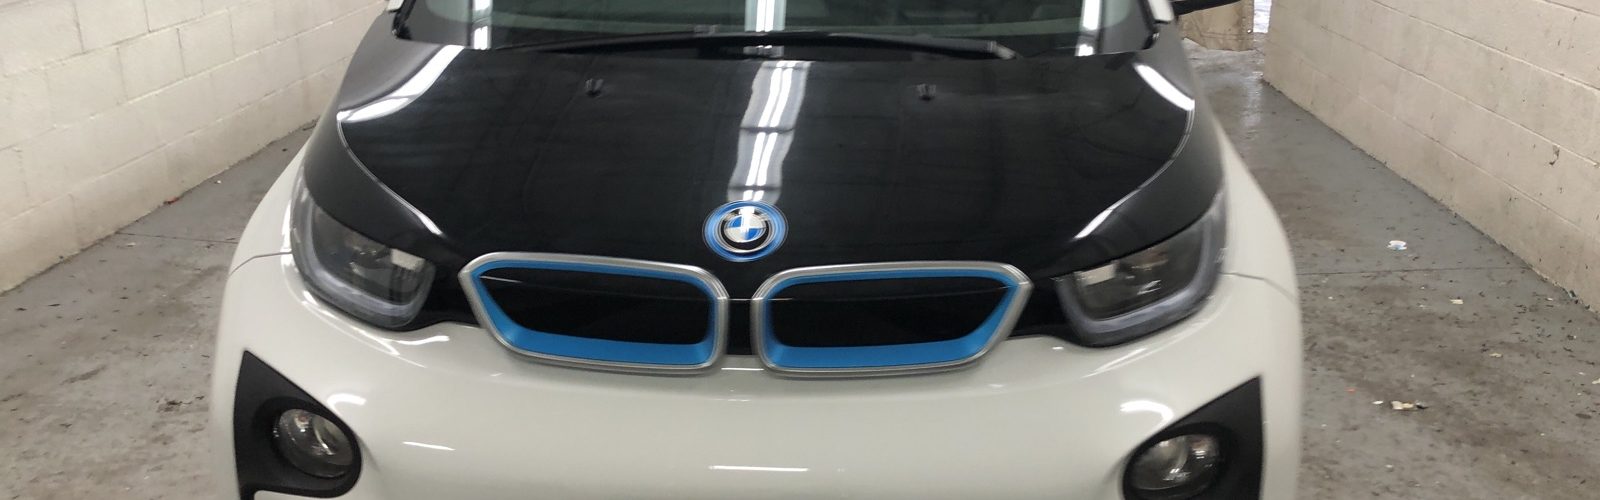 BMW i3 DEKA 2017, 18 500 km – Seulement 22 500 $ (subvention incluse) -Vendue